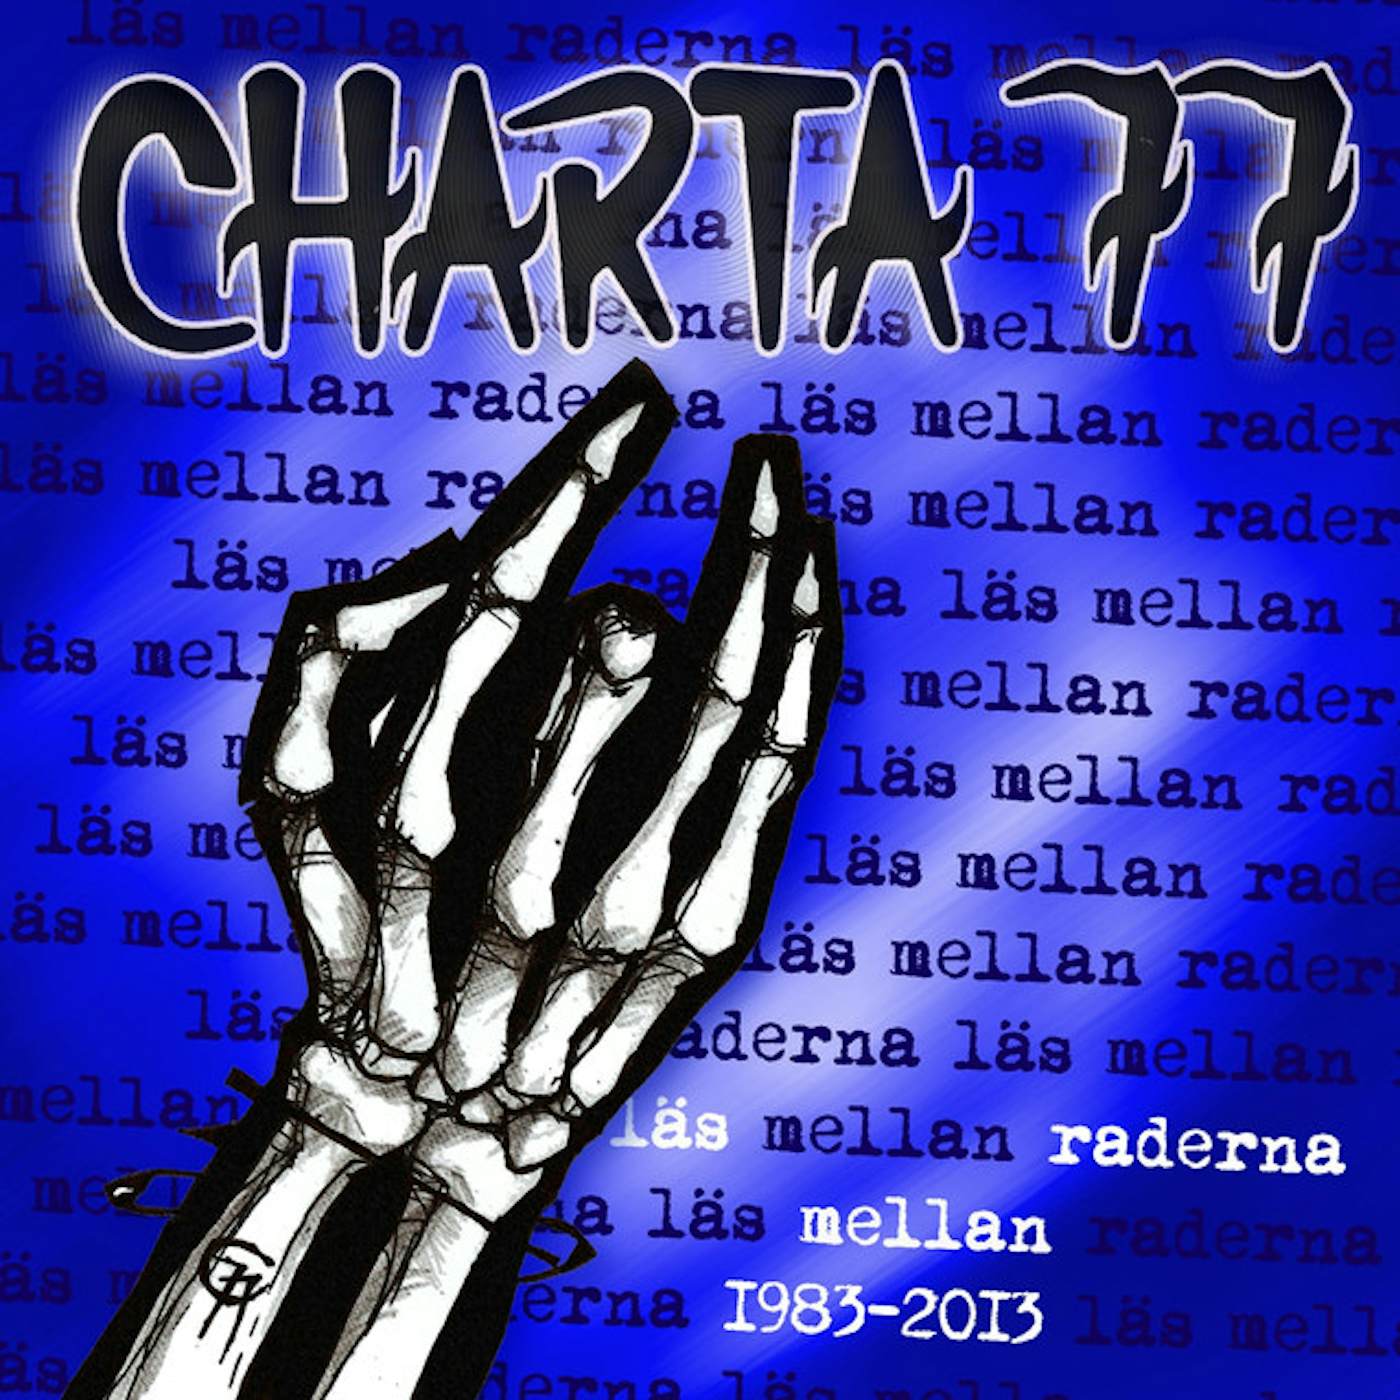 Charta 77 LAS MELLAN RADERNA 1983-2013 Vinyl Record